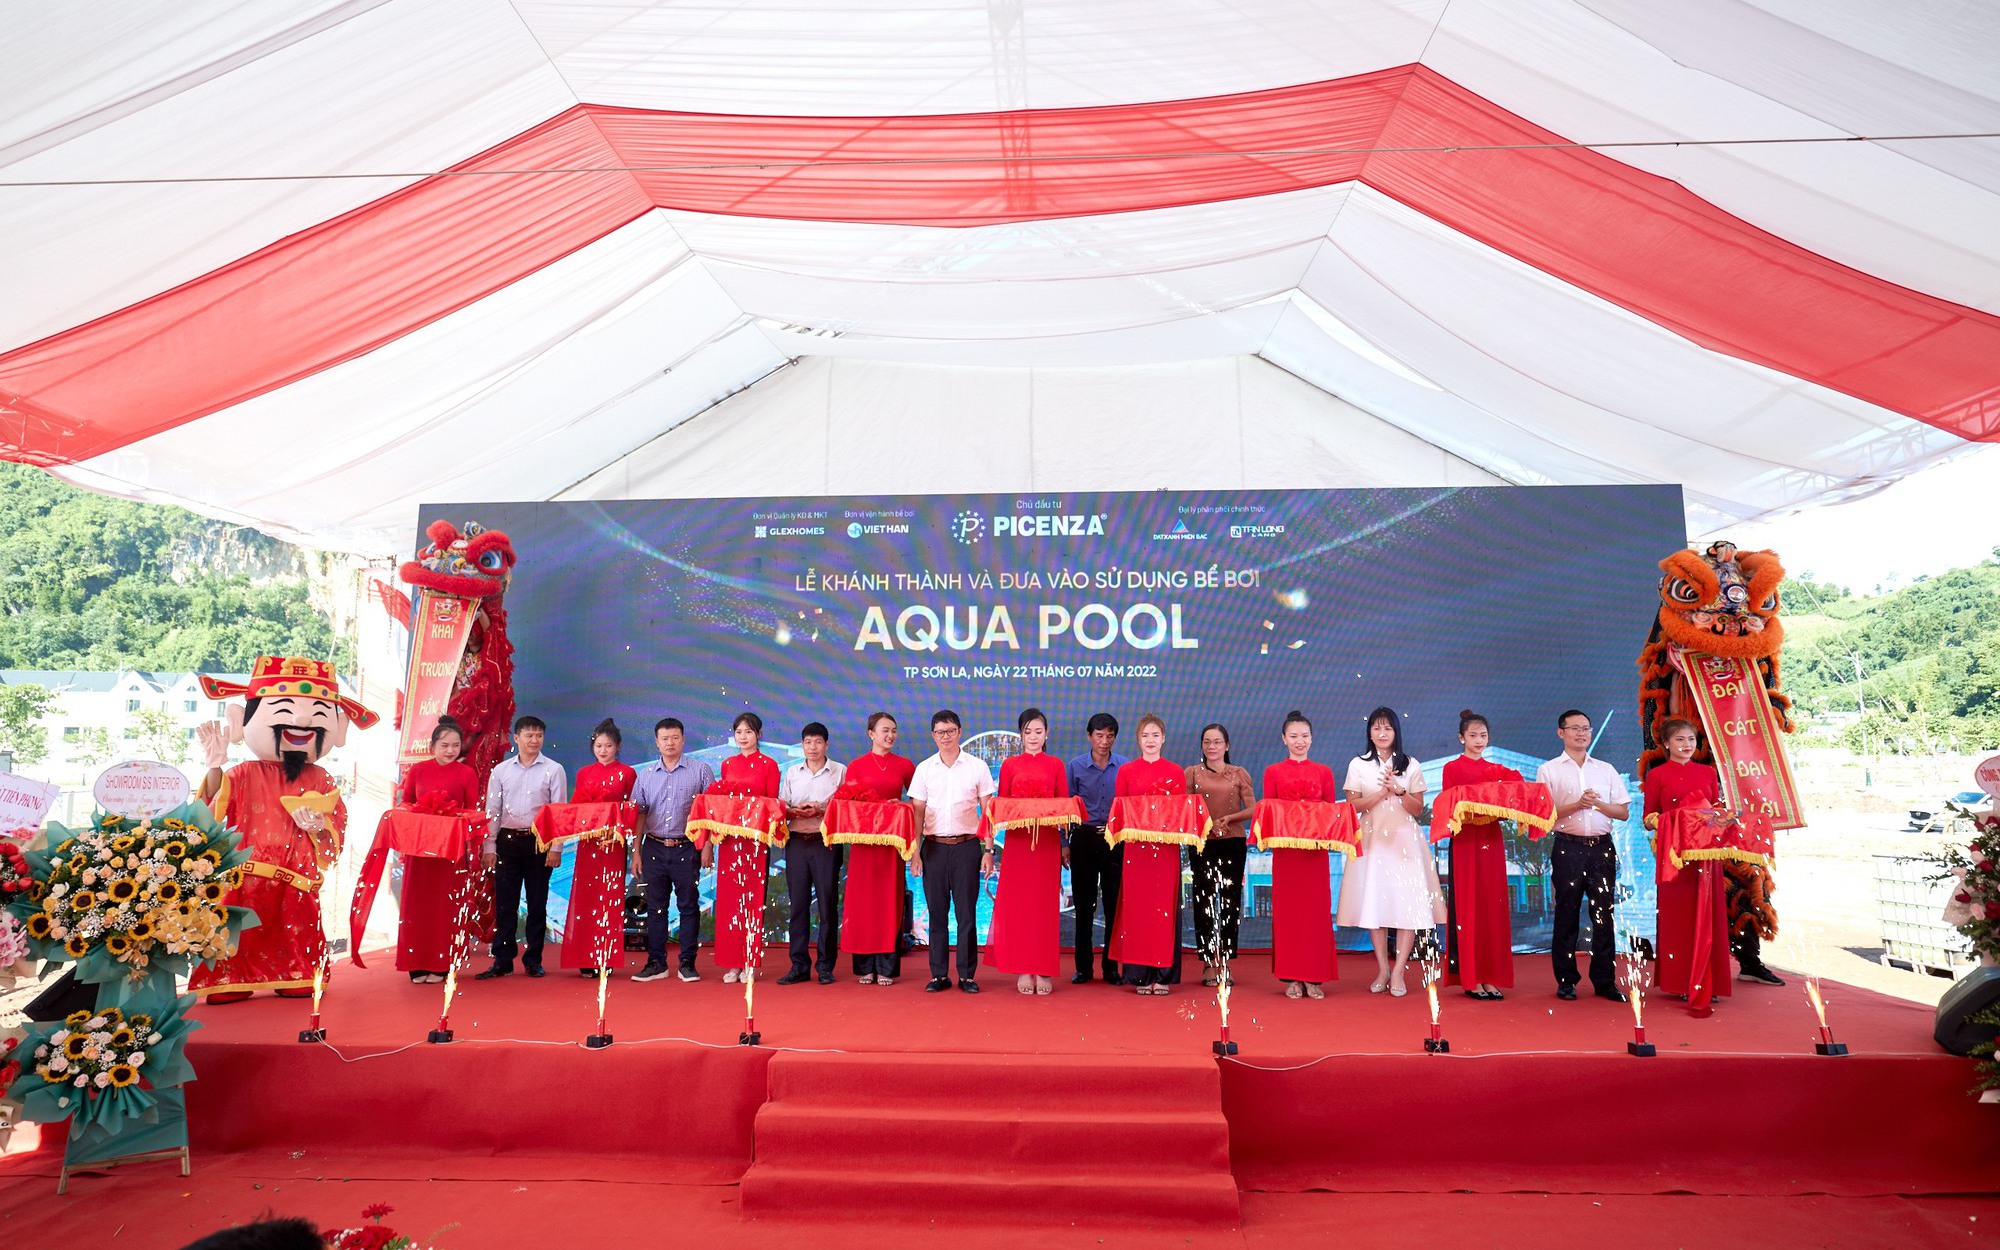 Khánh thành bể bơi tiêu chuẩn quốc gia tiên phong tại Sơn La - Aqua Pool, đánh dấu chuỗi sự kiện mùa hè sôi động tại Picenza Riverside